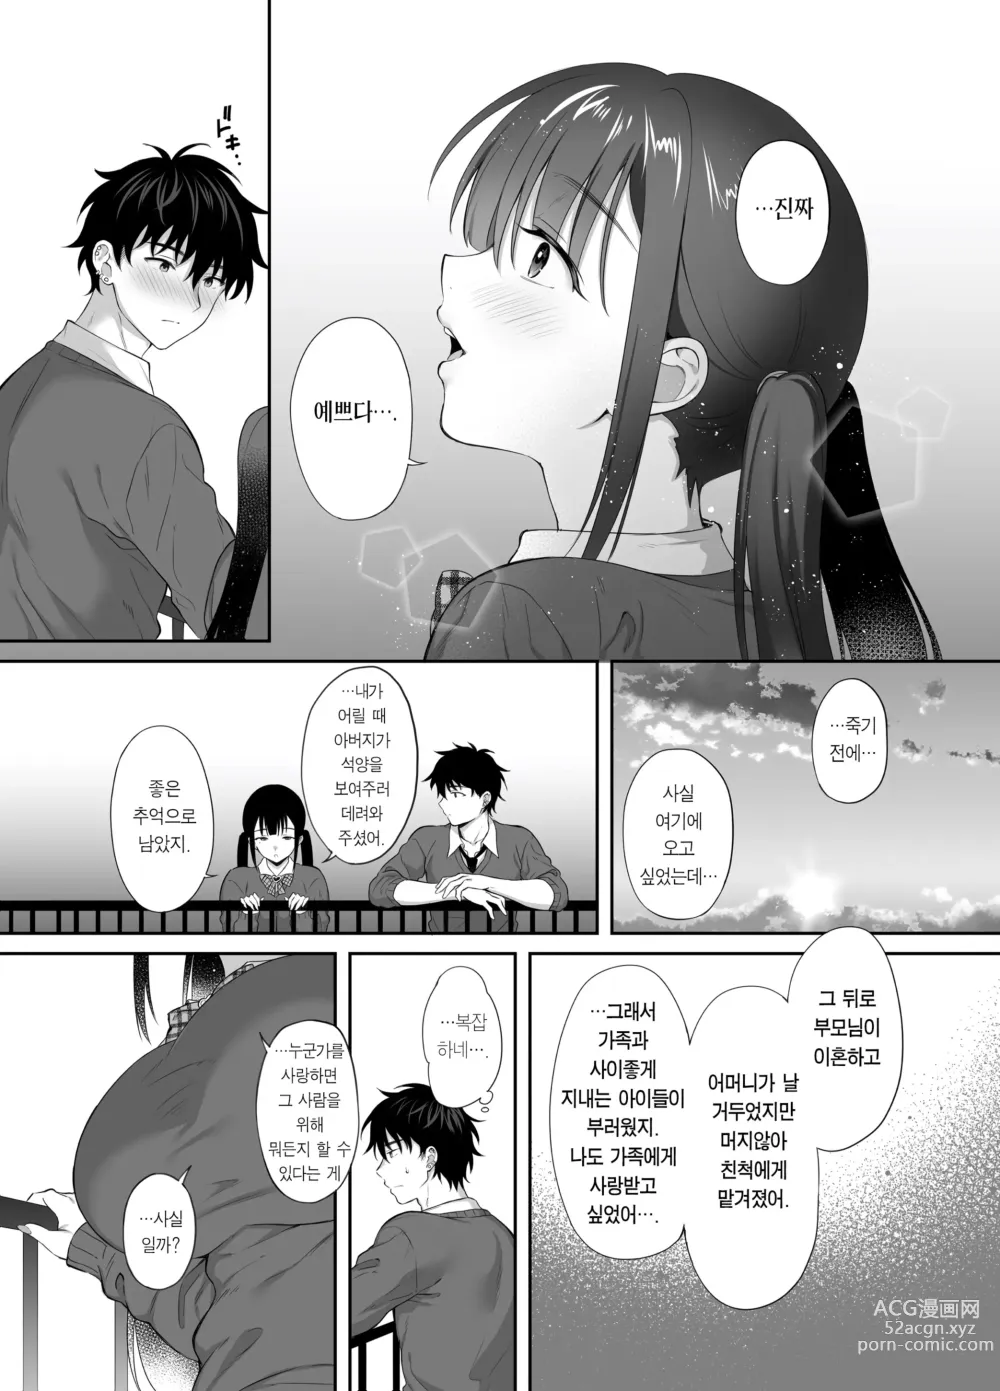 Page 49 of doujinshi 폐허에서 지뢰녀랑 밤새 질내사정 섹스한 이야기 2 (decensored)